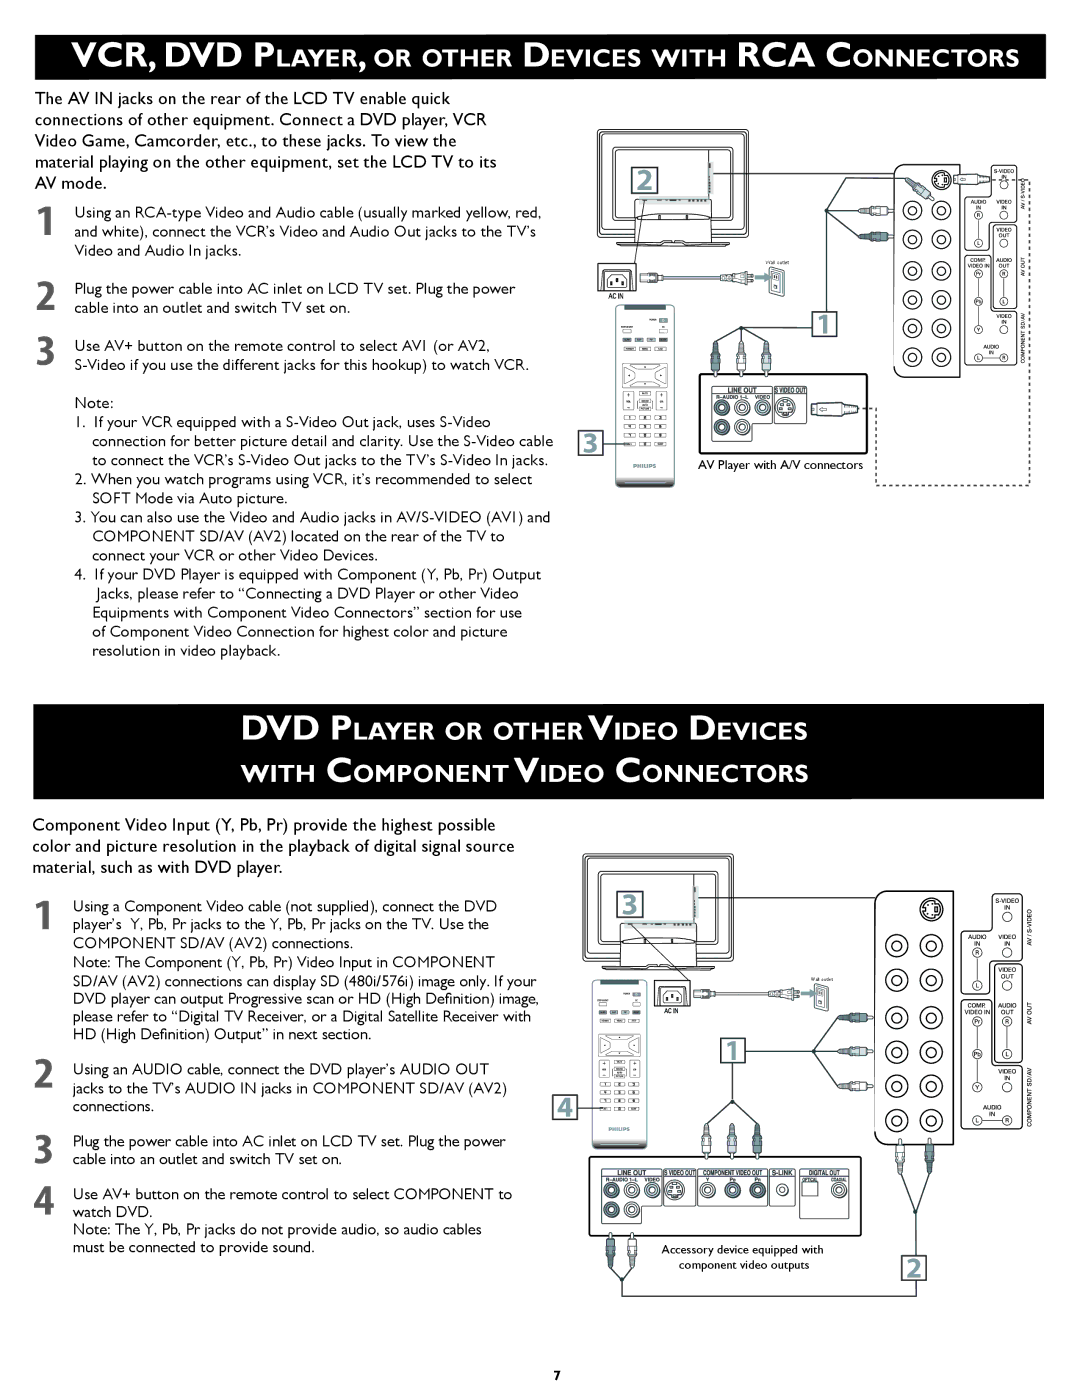 Philips 23PF5320/28 setup guide Use AV+ button on the remote control to select AV1 or AV2 